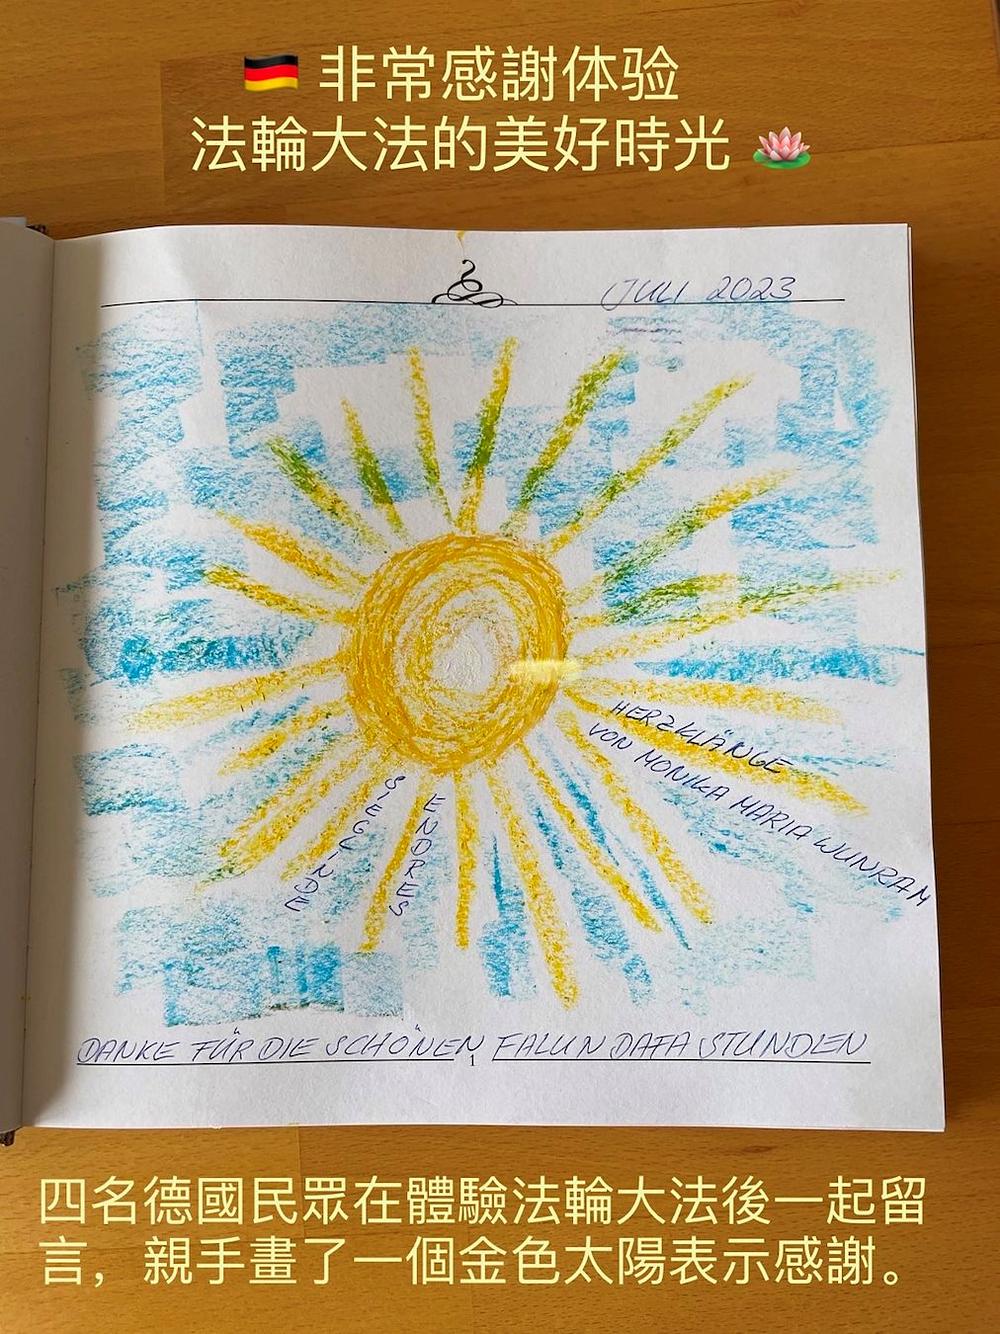 Četiri njemačka praktikanta nacrtala su zlatno sunce kako bi izrazili svoju zahvalnost nakon što su iskusili Falun Dafa.